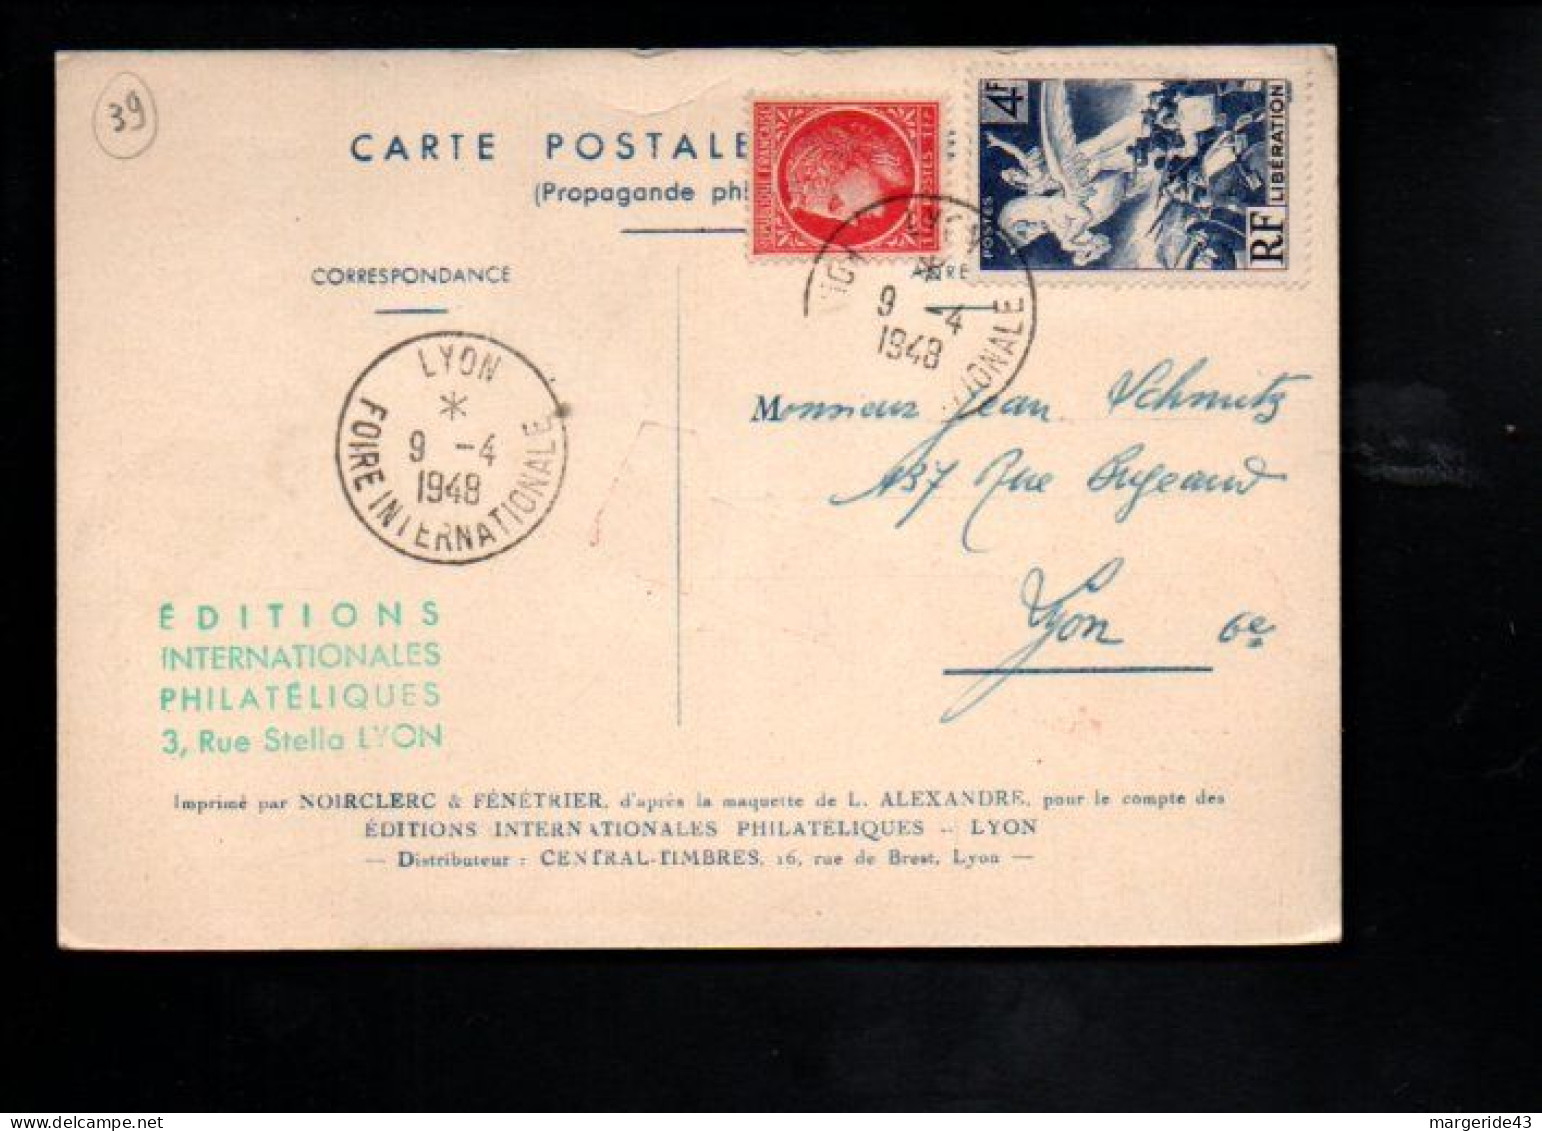 FOIRE NATIONAL D'ECHANTILLONS LYON 1948 - Commemorative Postmarks